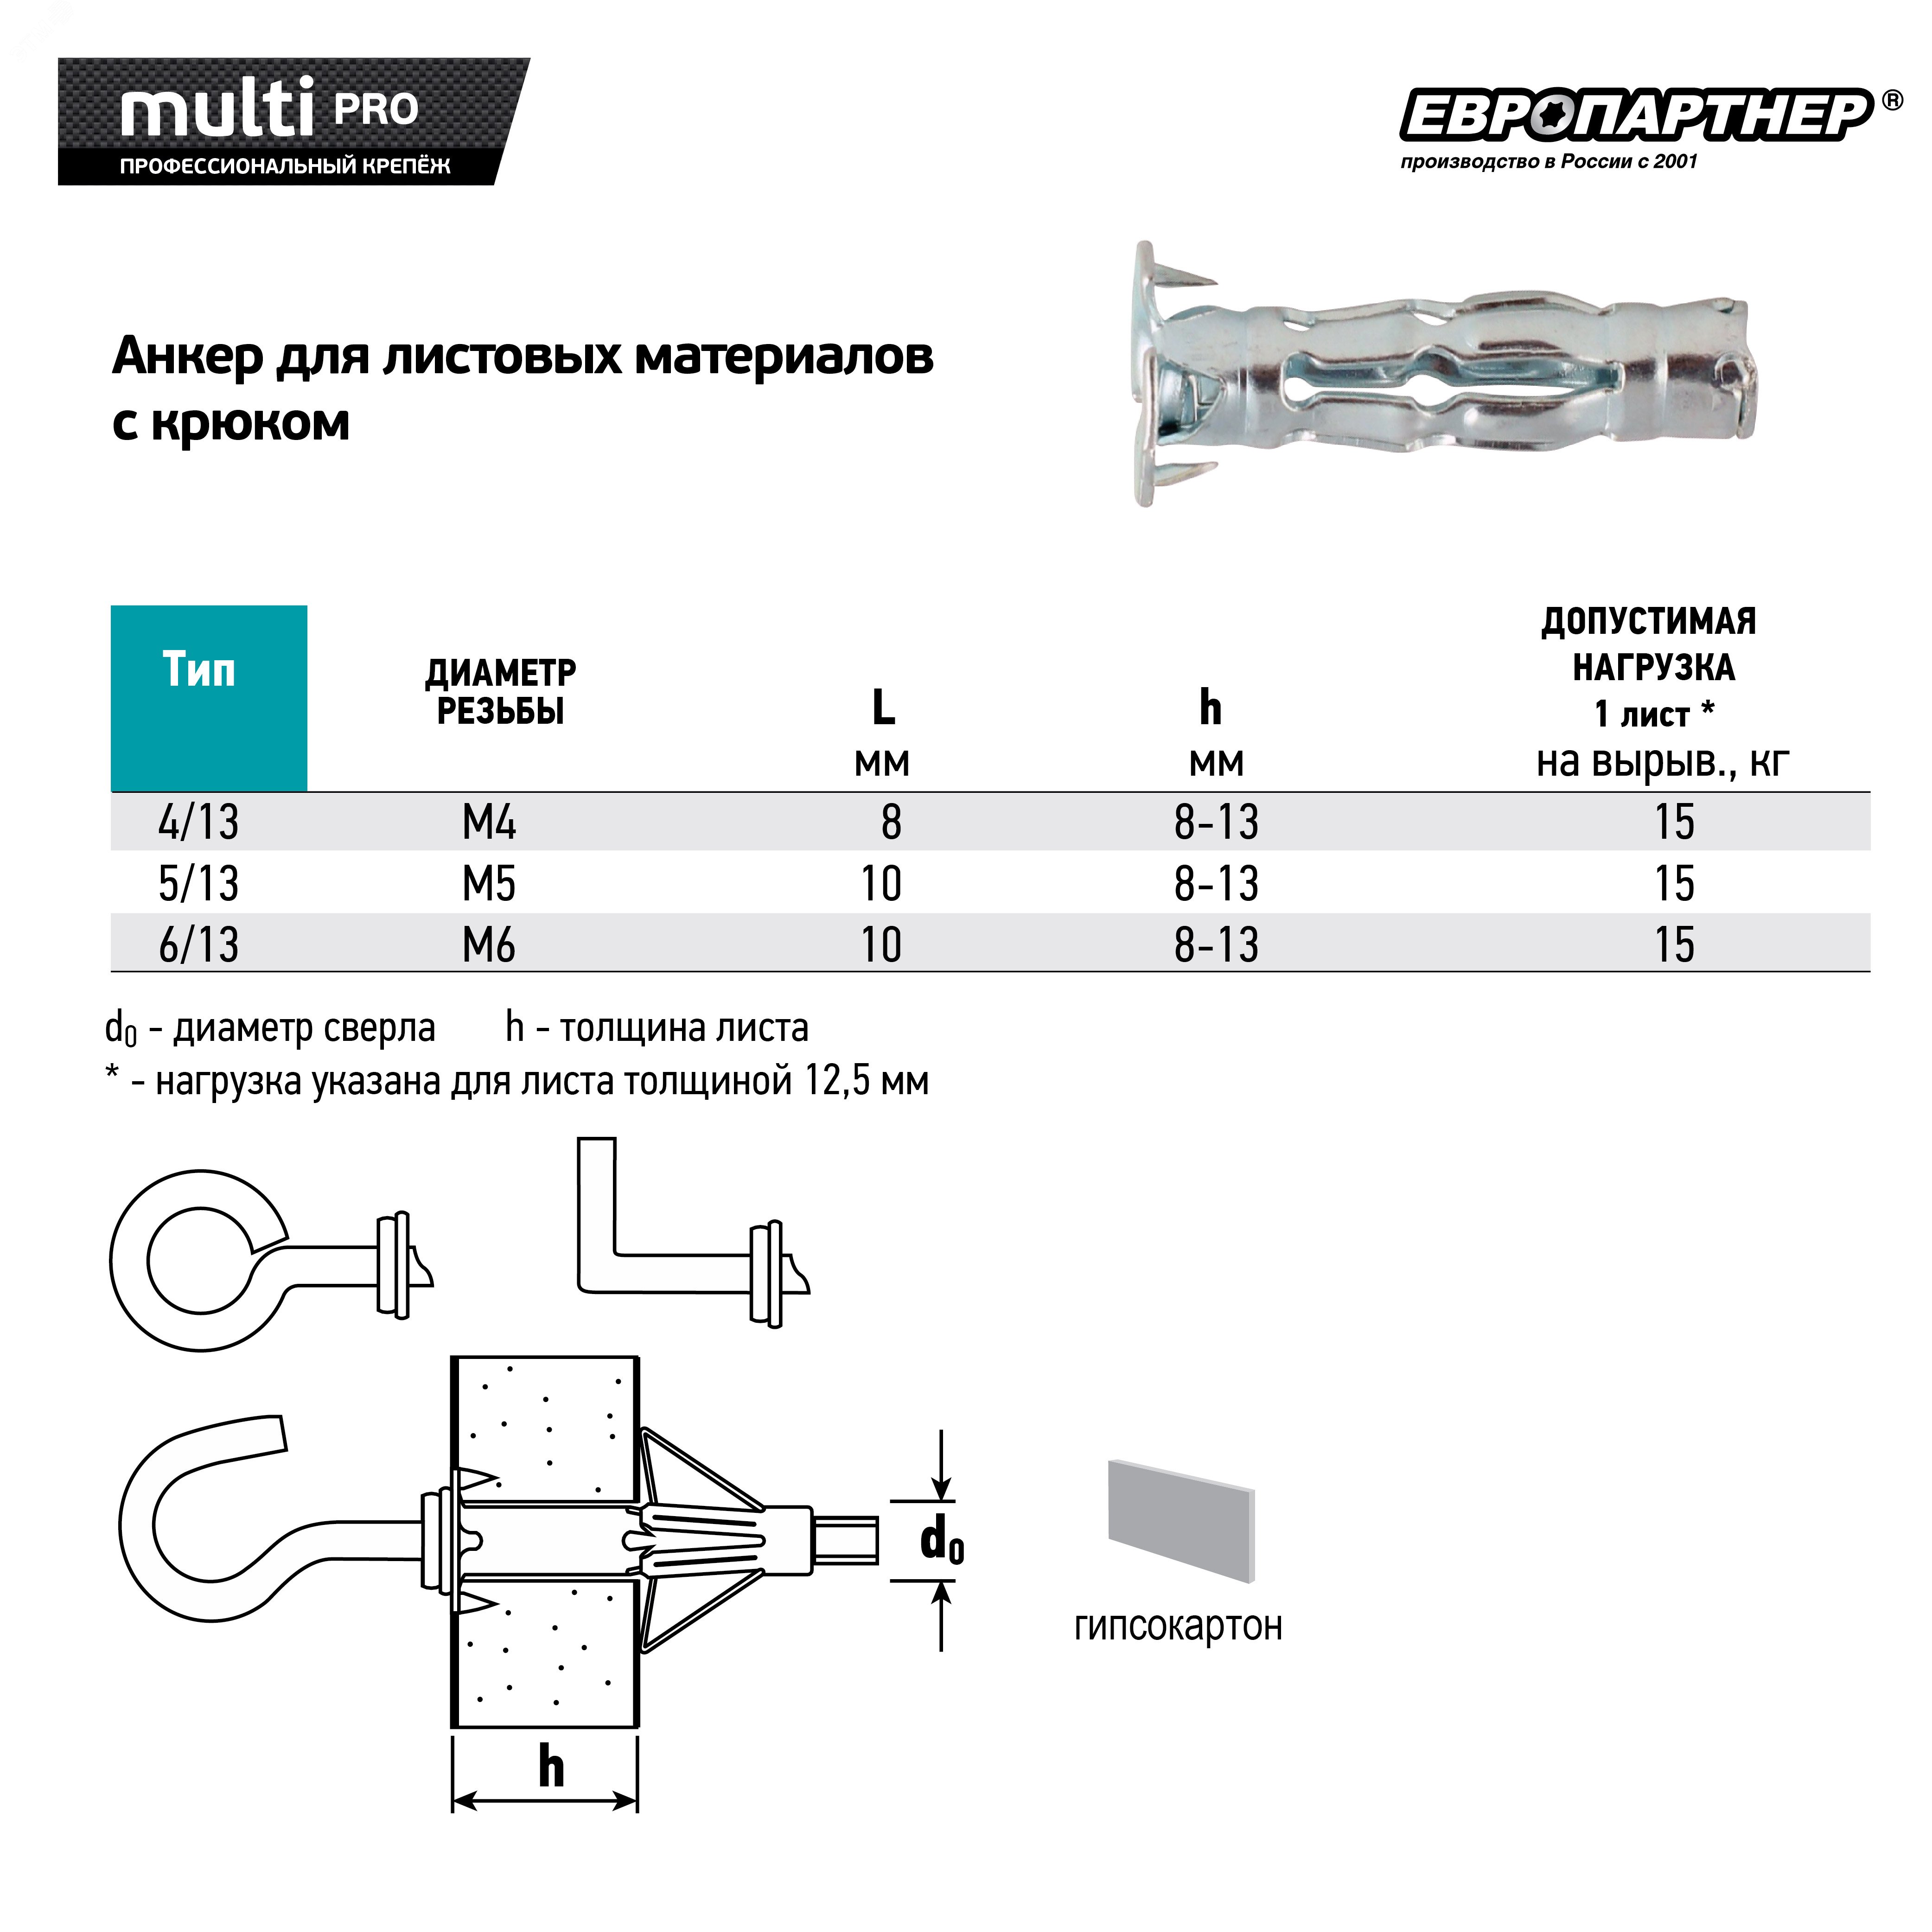 Анкер для листовых материалов с крюком MULTI PRO оцинкованный 5/13 мм (2 шт.) MPR 0376 Европартнер - превью 4